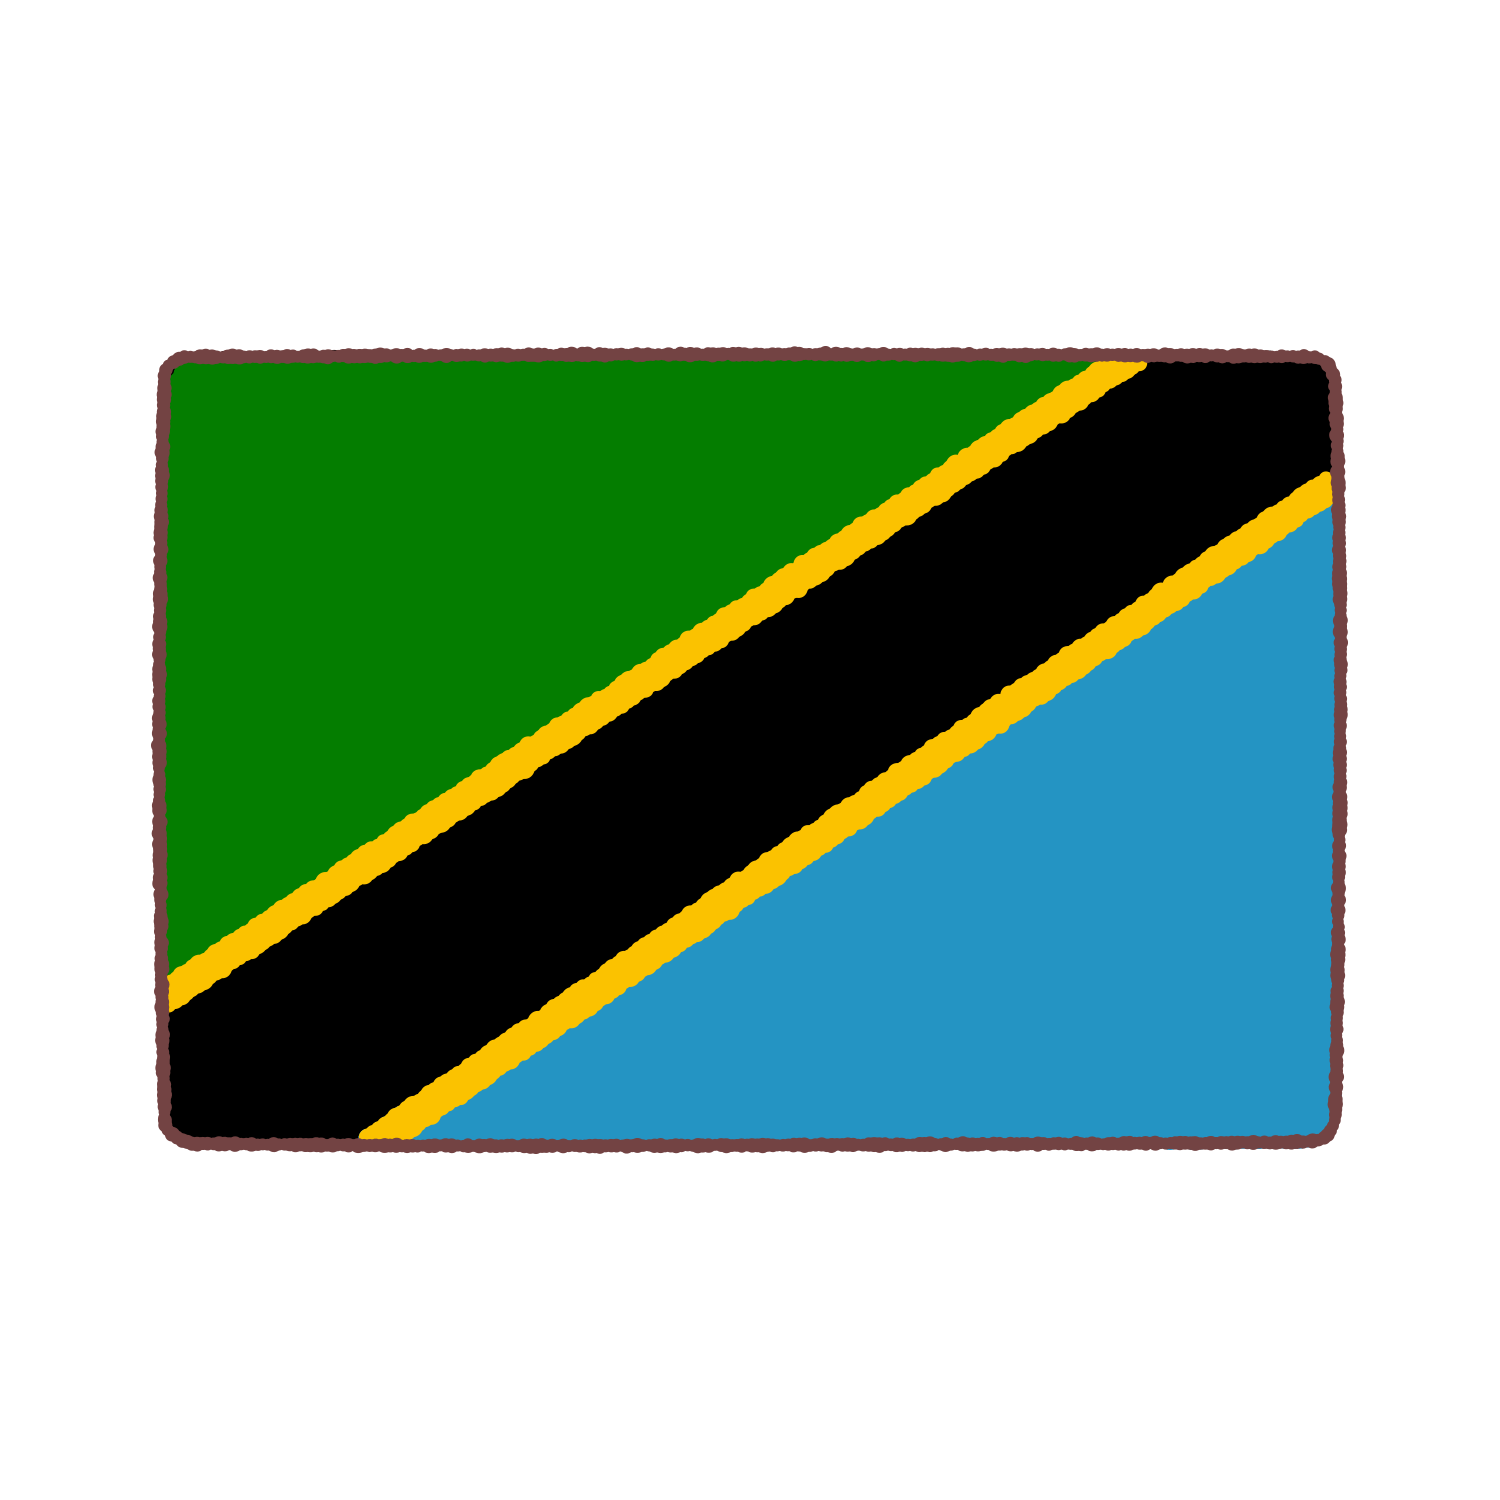 タンザニア国旗のイラスト